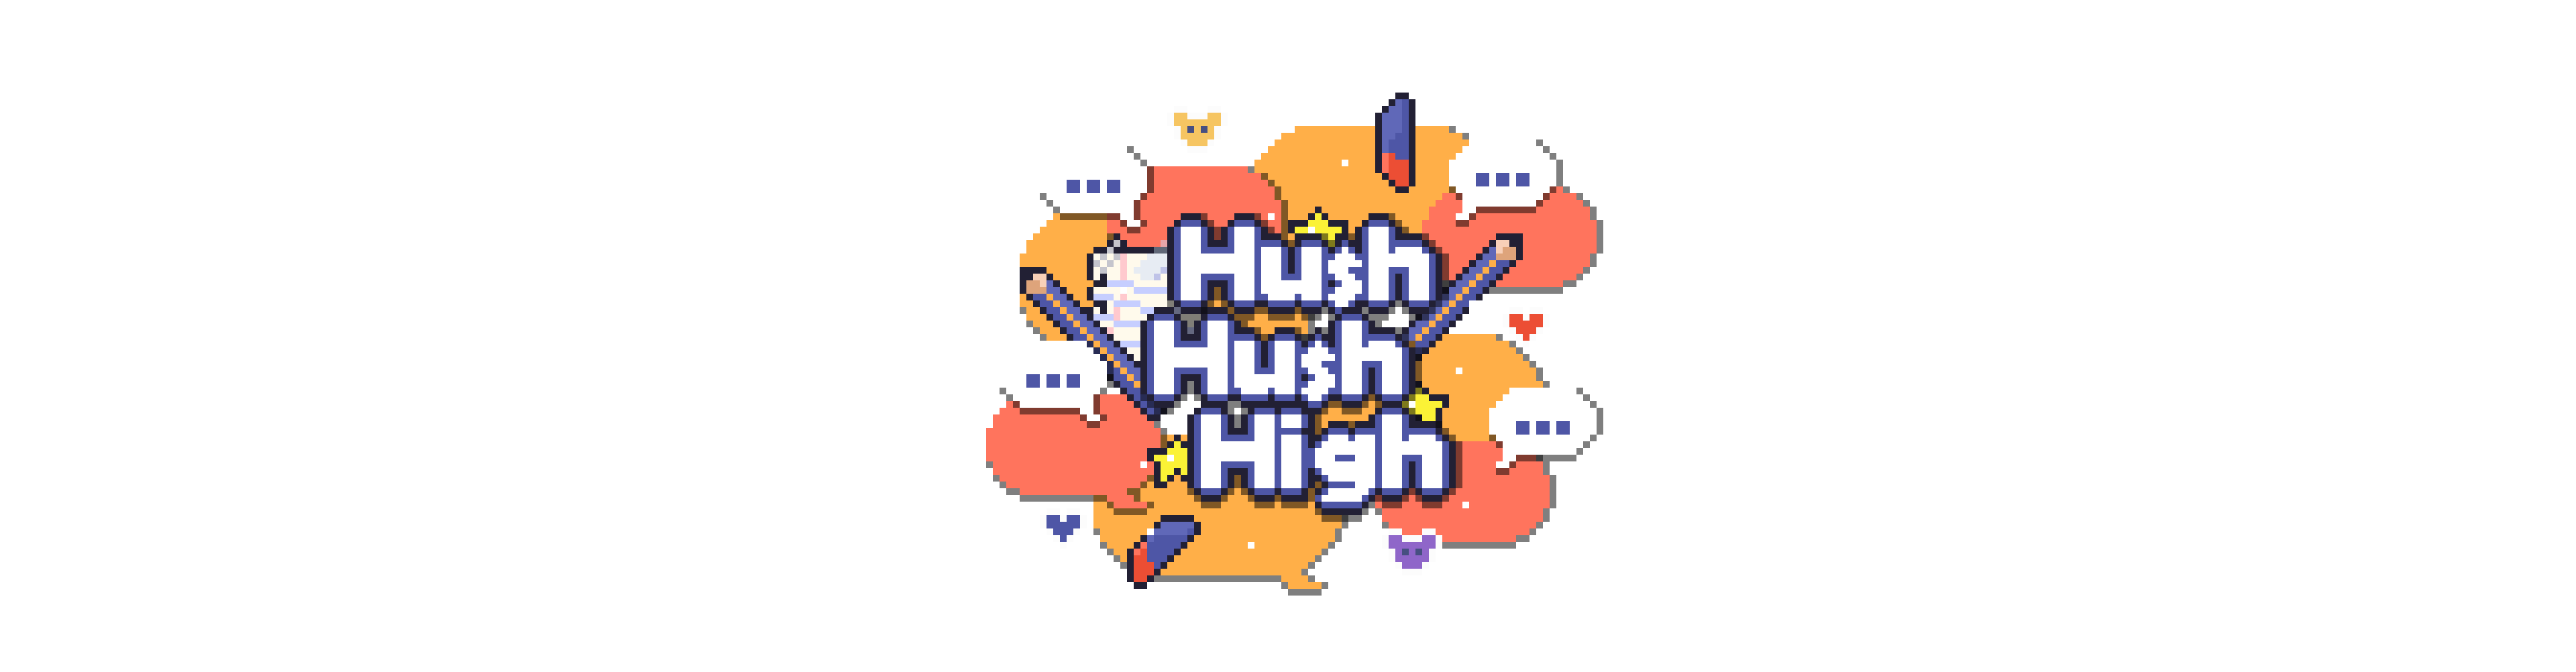 Hush Hush High